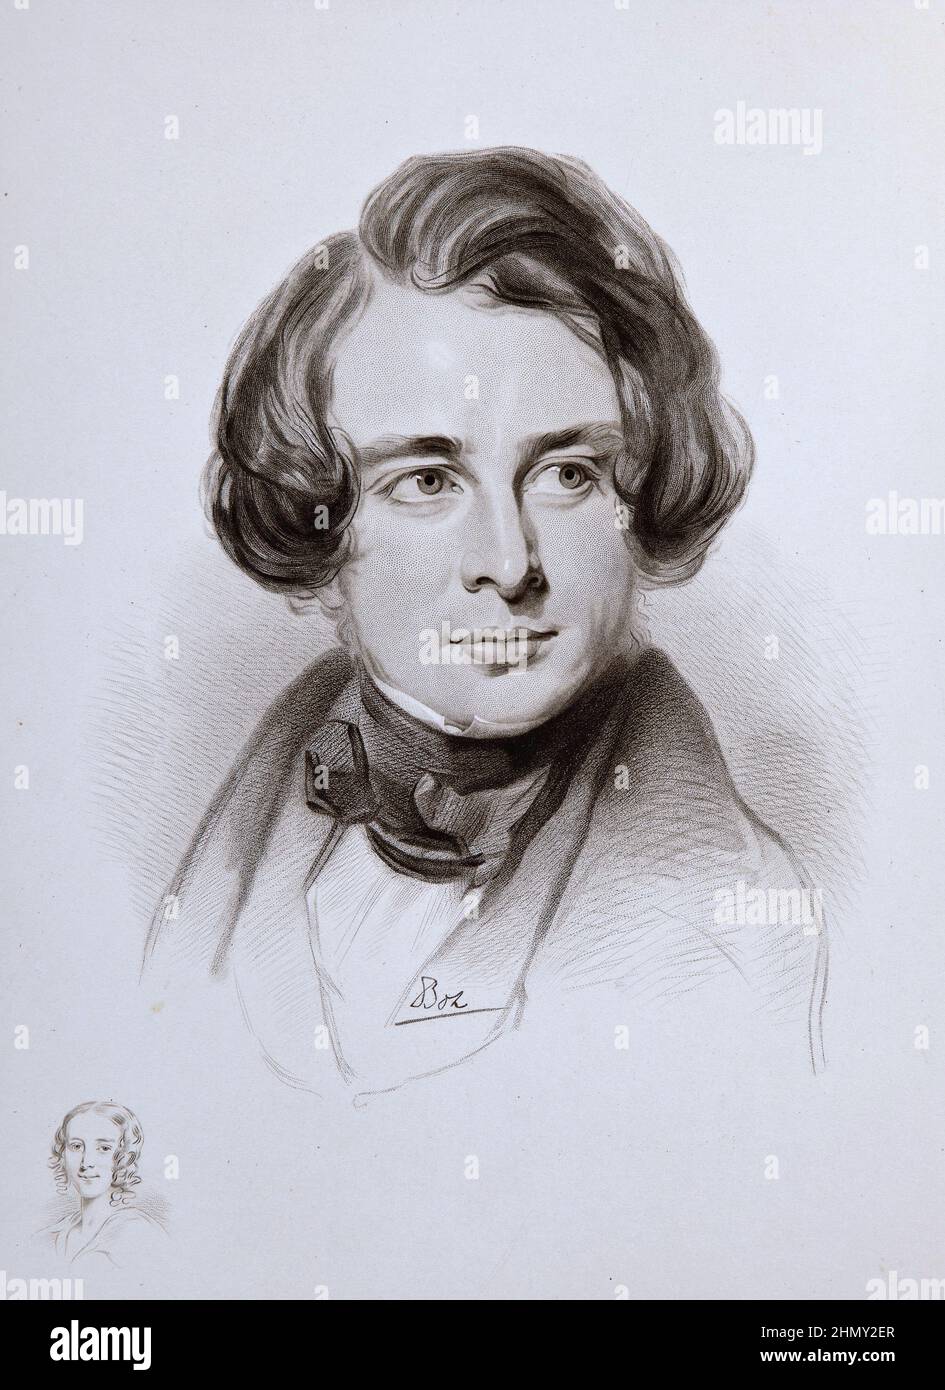 Un ritratto dello scrittore inglese Charles Dickens dal 1842 quando aveva 30 anni. Lo schizzo in basso a sinistra è la sorella di Dickens Fanny Foto Stock